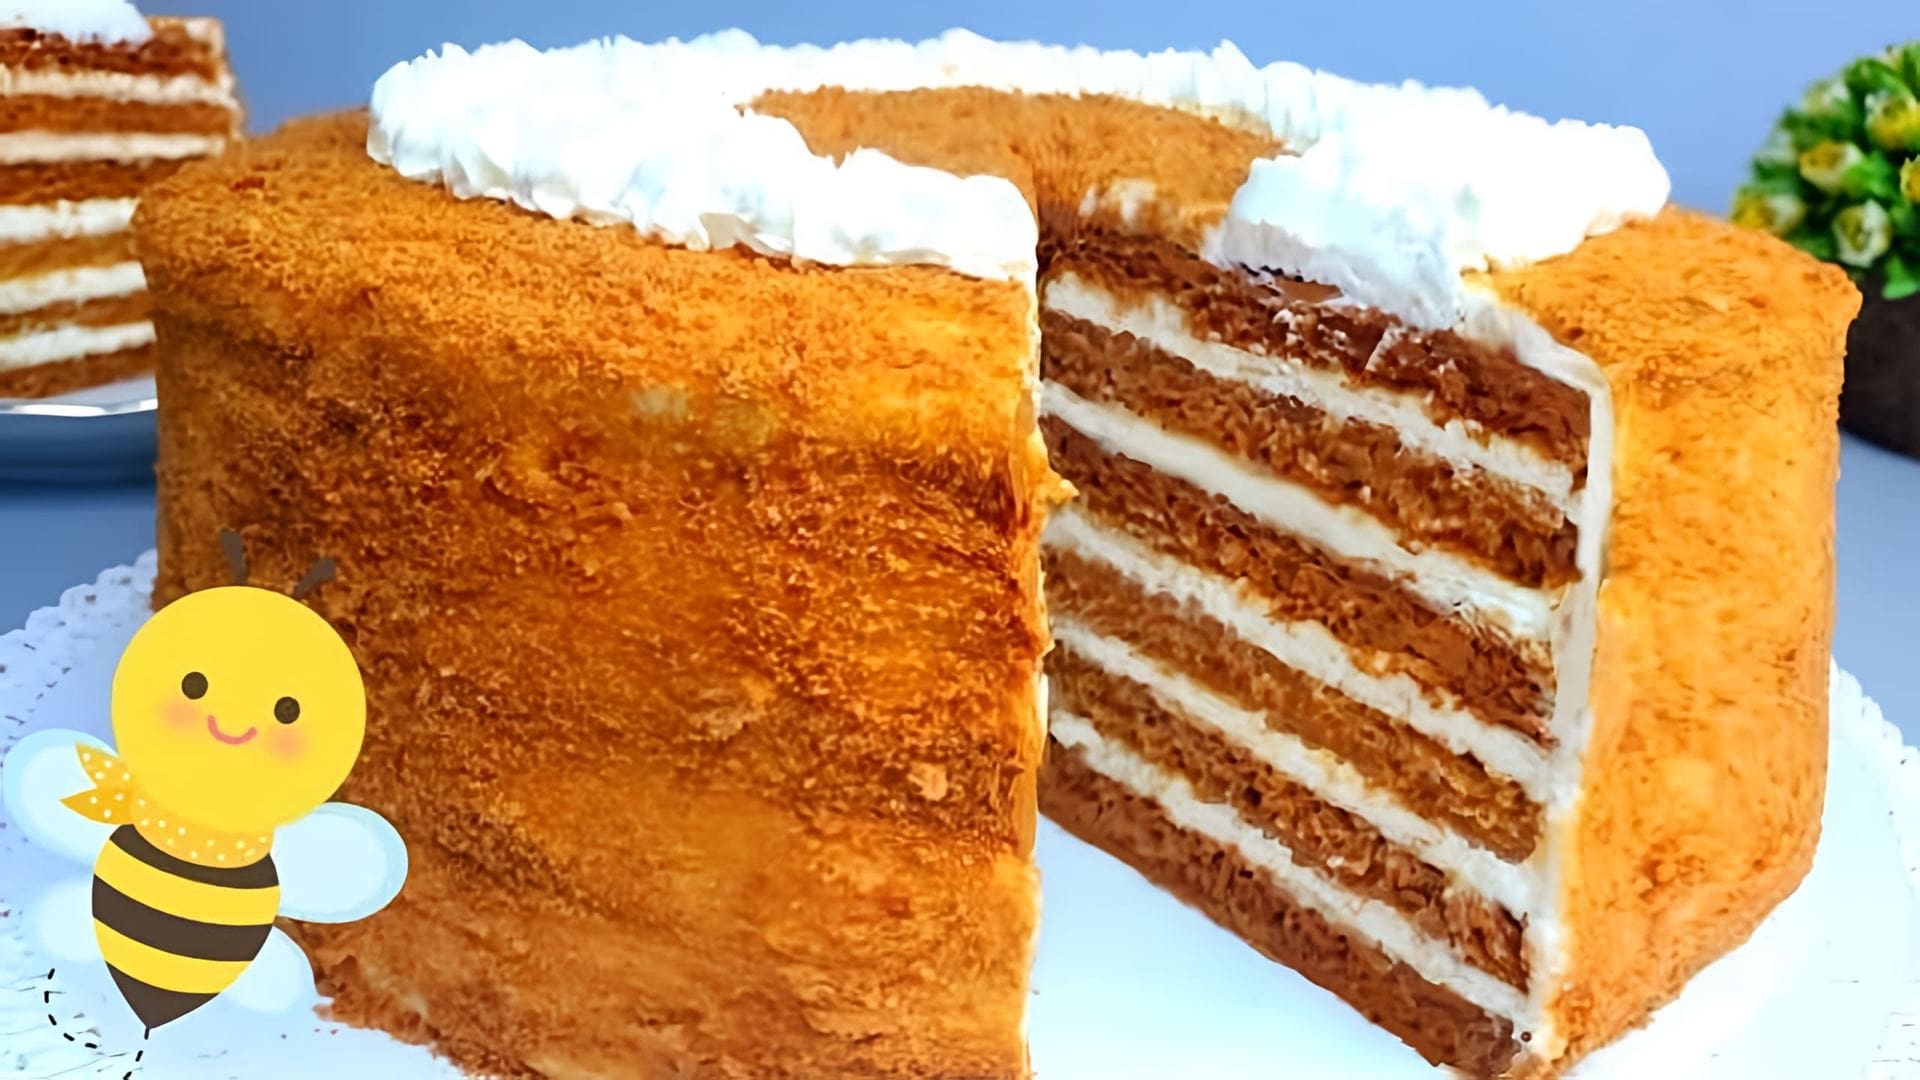 В этом видео демонстрируется рецепт приготовления классического торта Медовик